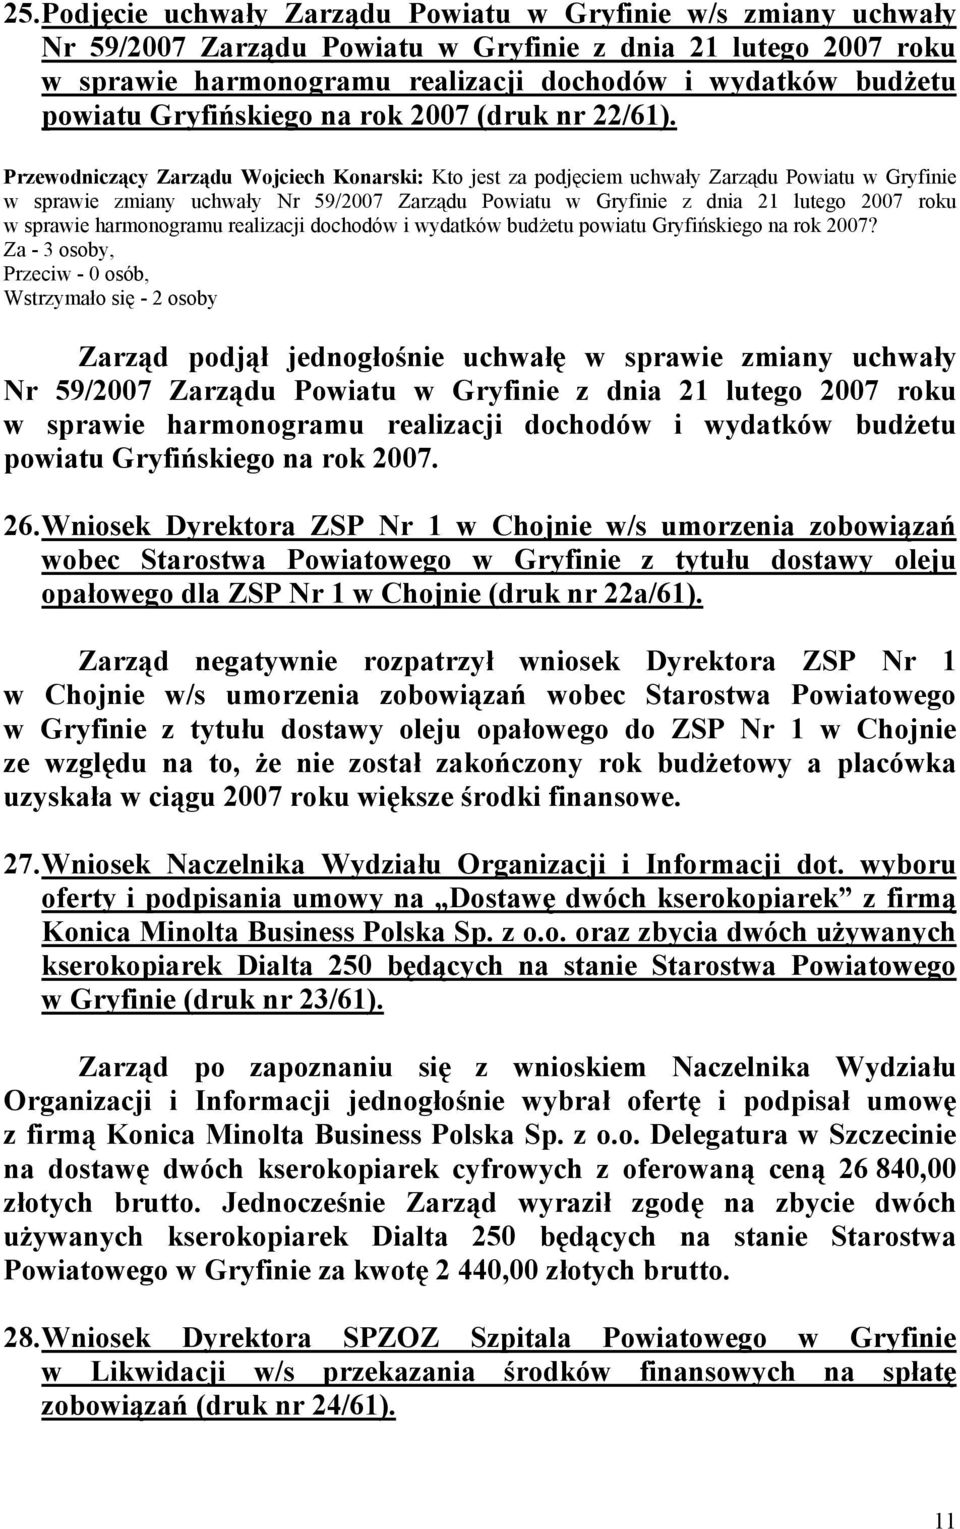 w sprawie zmiany uchwały Nr 59/2007 Zarządu Powiatu w Gryfinie z dnia 21 lutego 2007 roku w sprawie harmonogramu realizacji dochodów i wydatków budżetu powiatu Gryfińskiego na rok 2007?